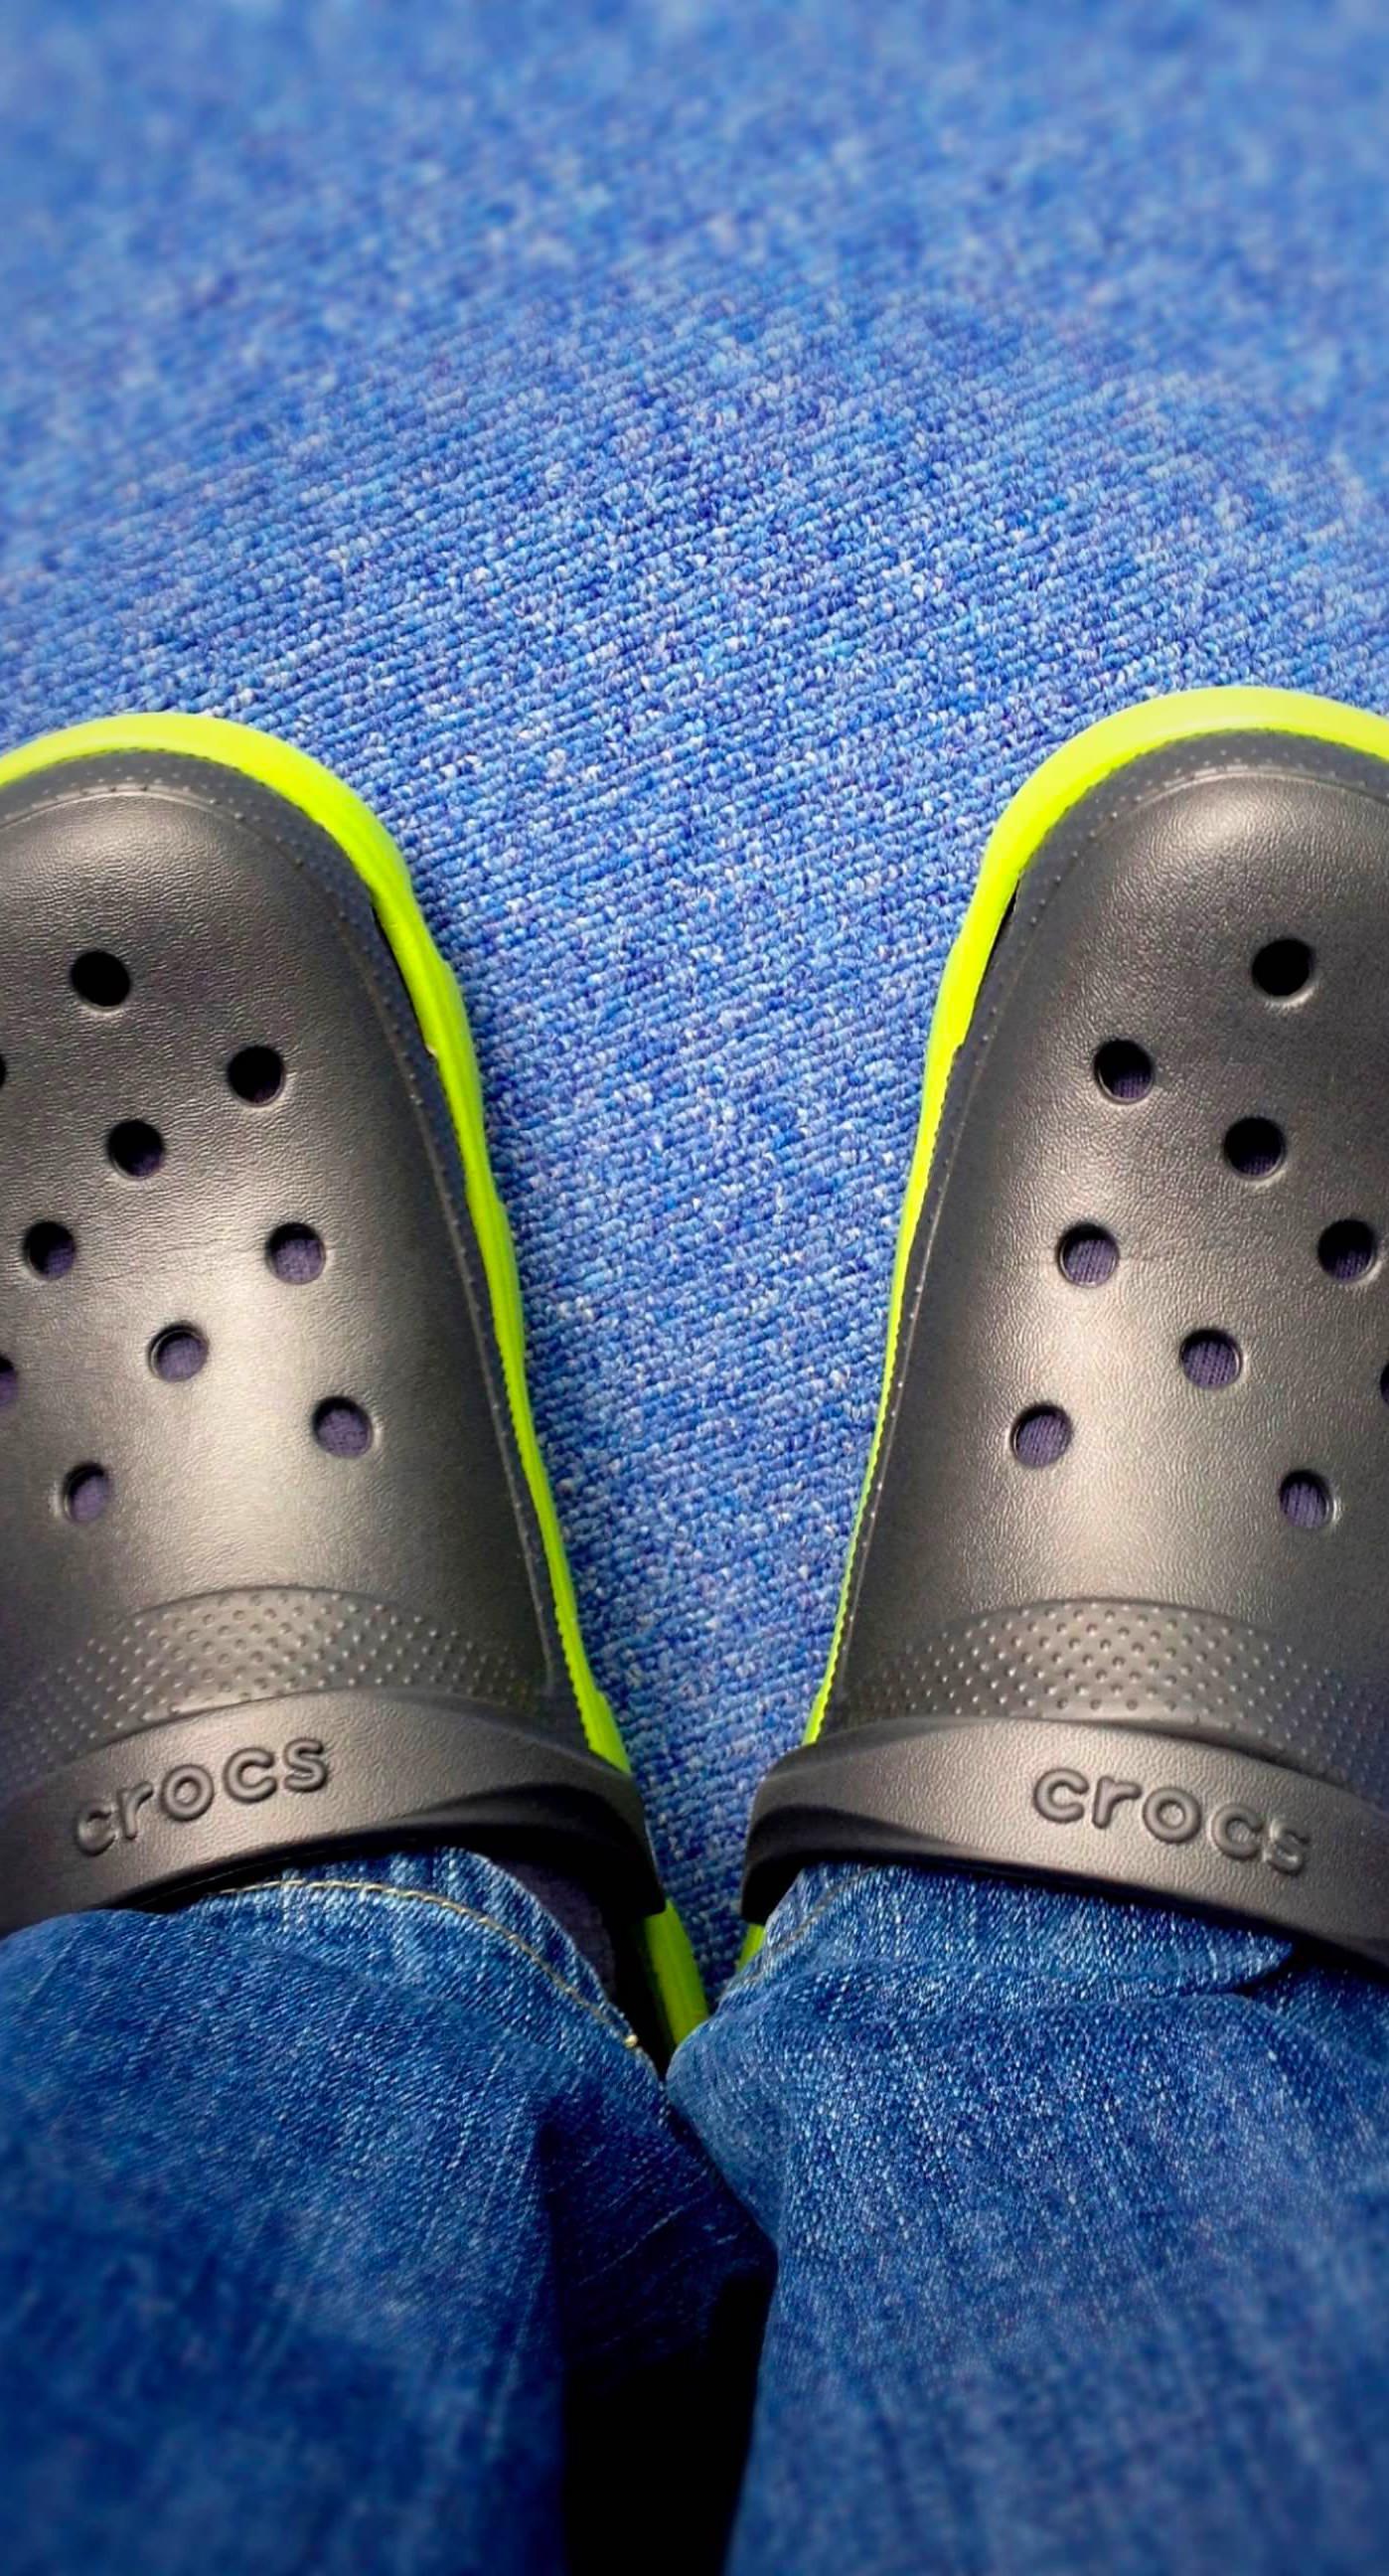 920 Crocs Shoes Stock Photos Pictures  RoyaltyFree Images  iStock   Crocs shoes nurse White crocs shoes Crocs shoes medical